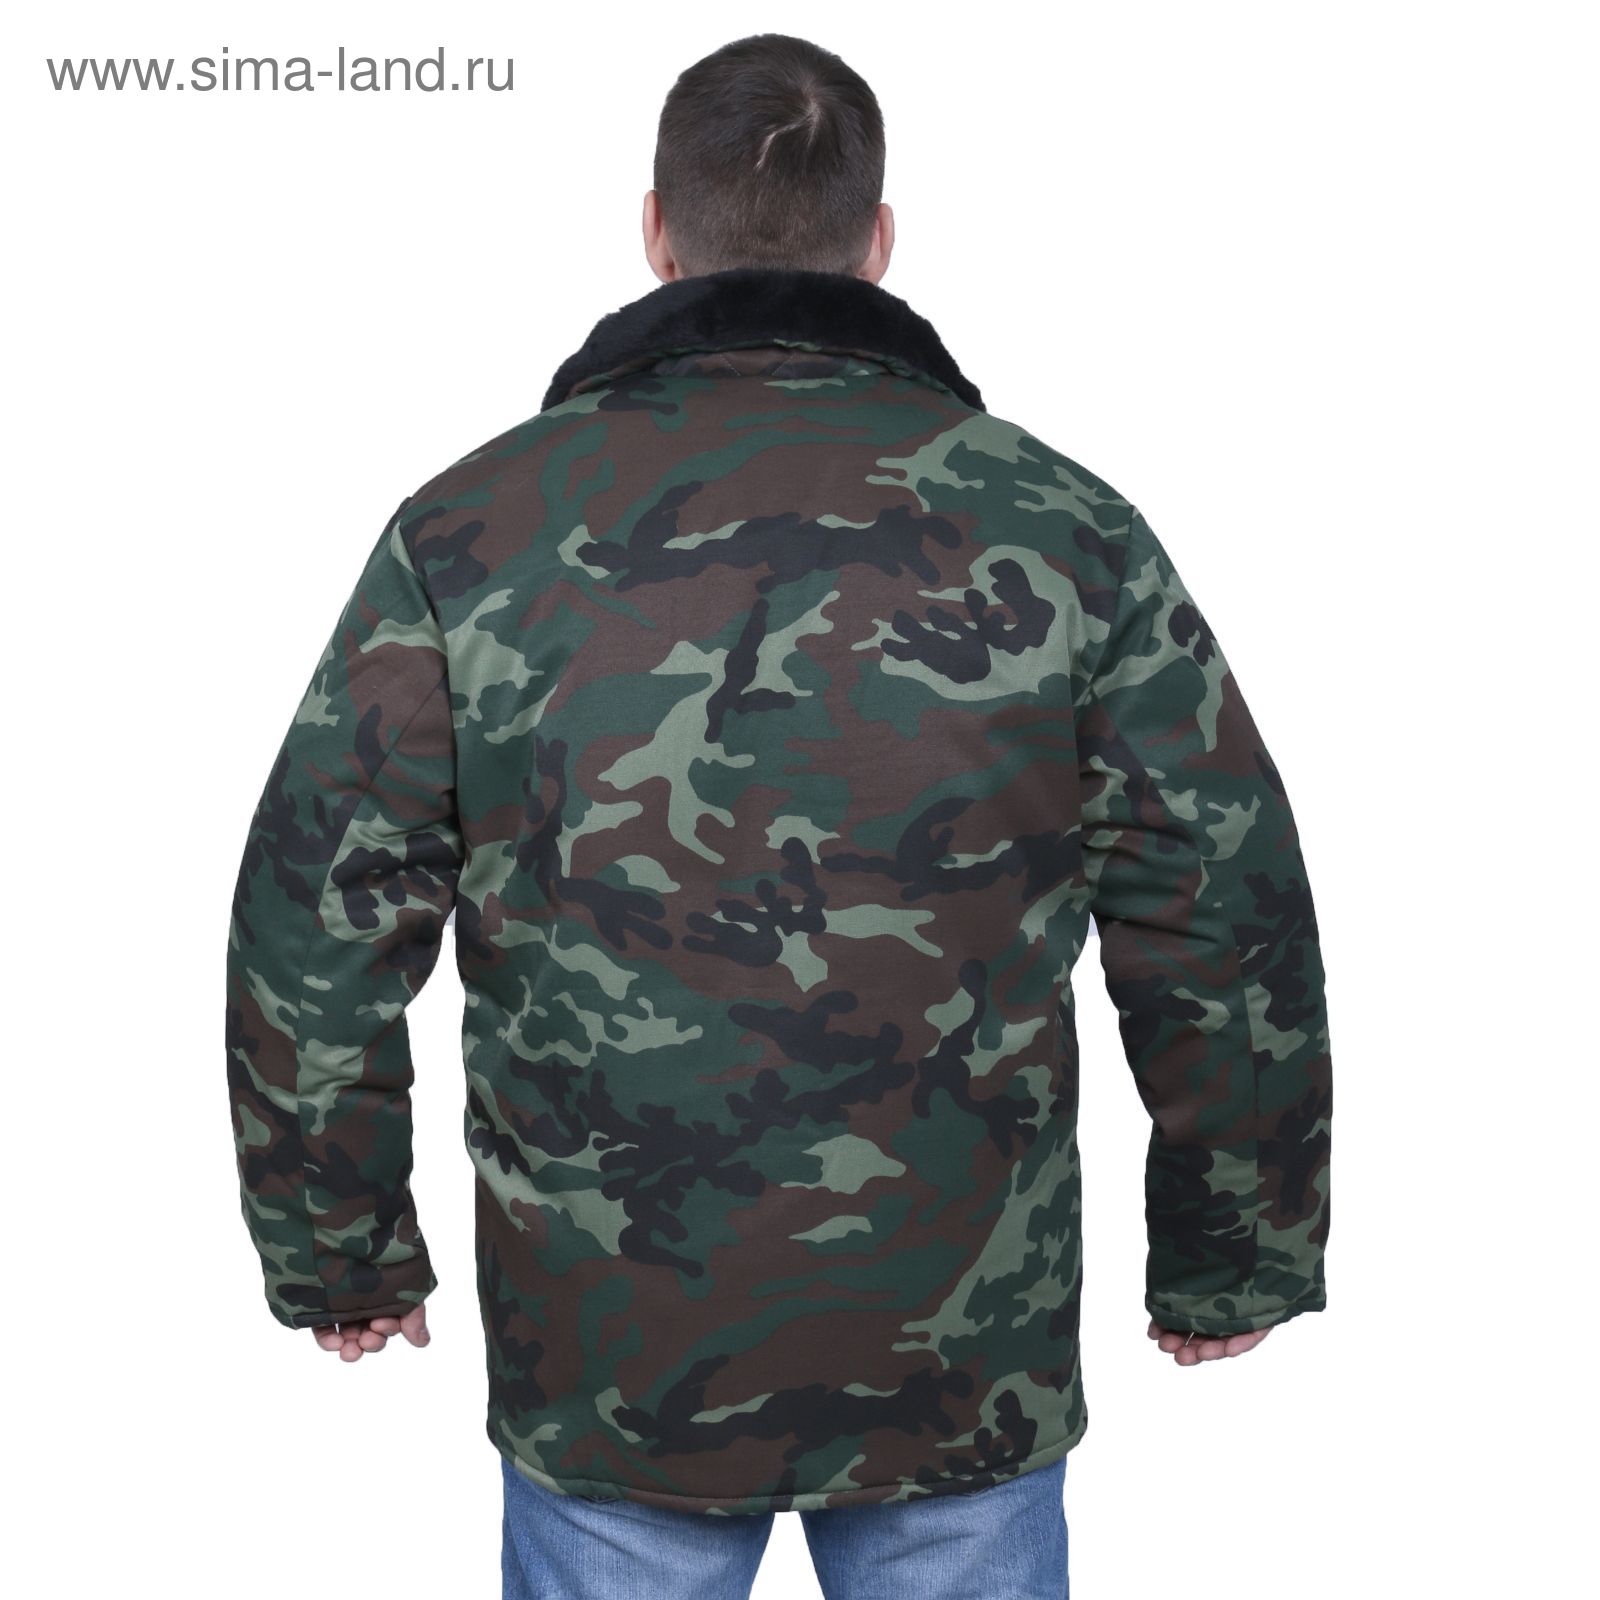 Куртка утеплённая, размер 48, рост 182-188 см, цвет зелёный